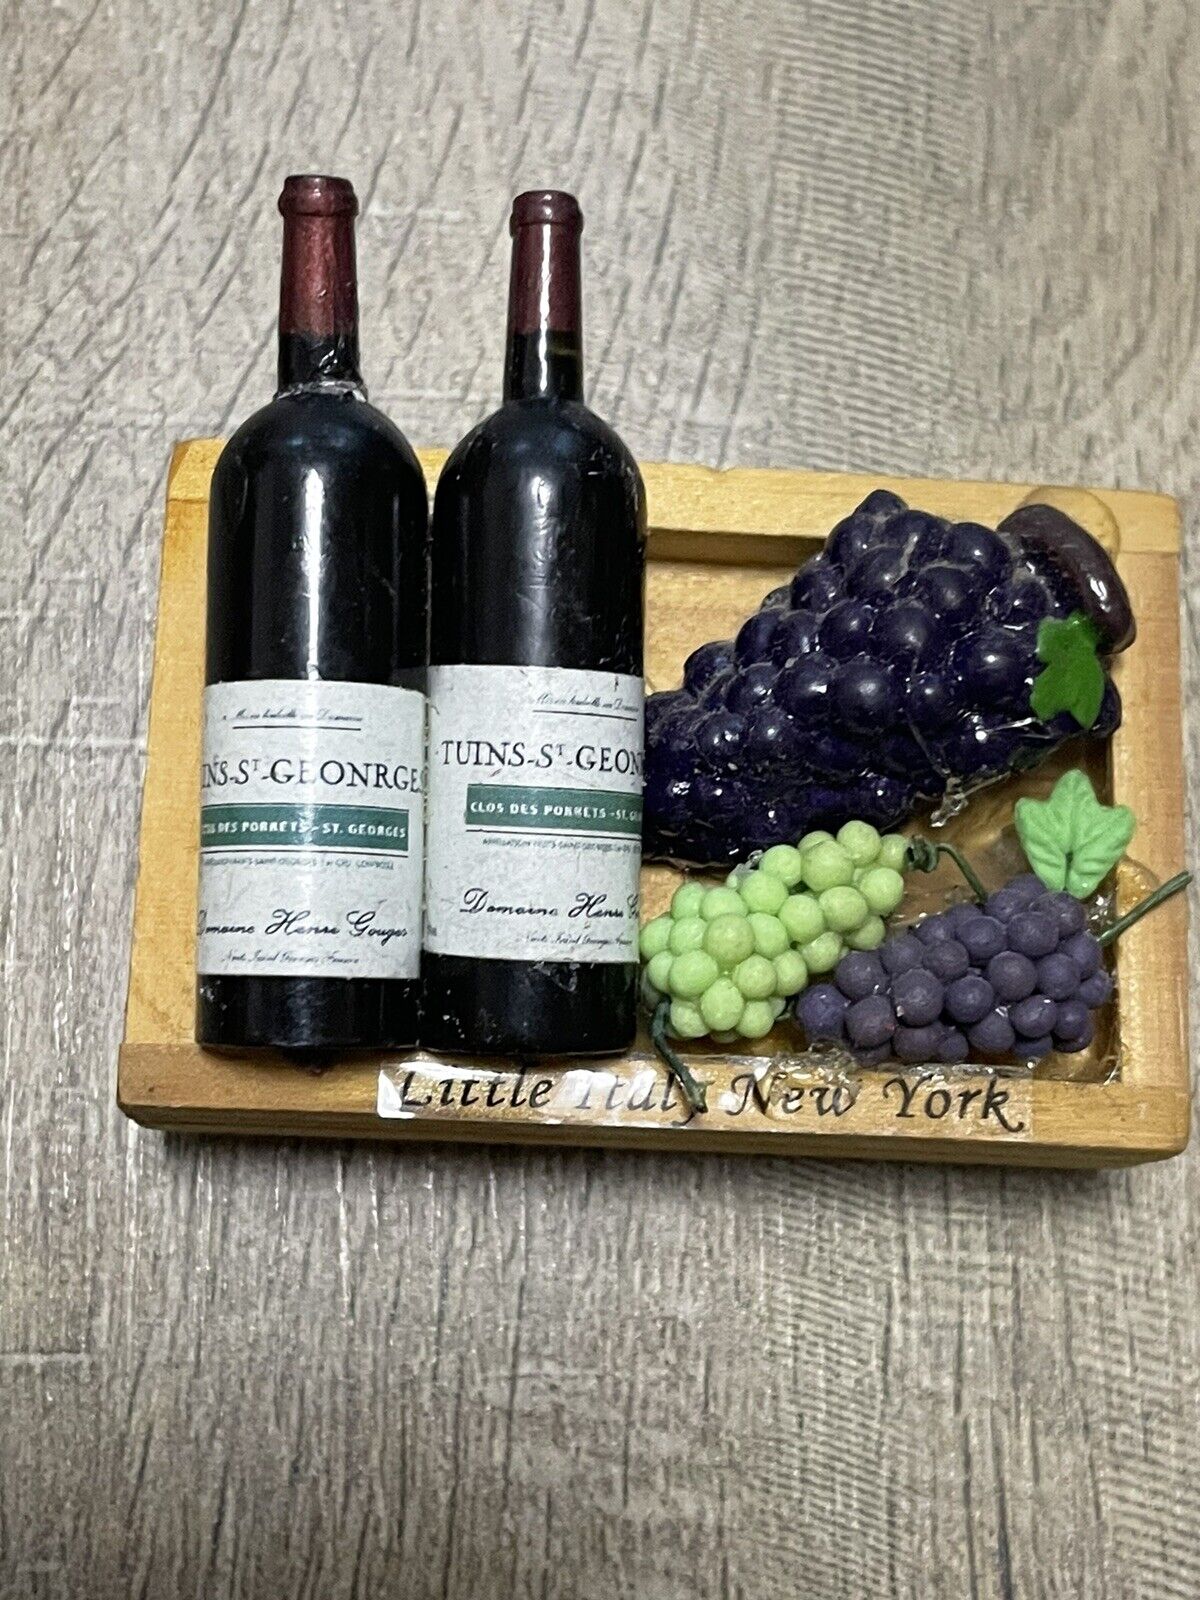 Vintage Little Italy New York Fridge Magnet Grapes Wine Bottles 3D Read